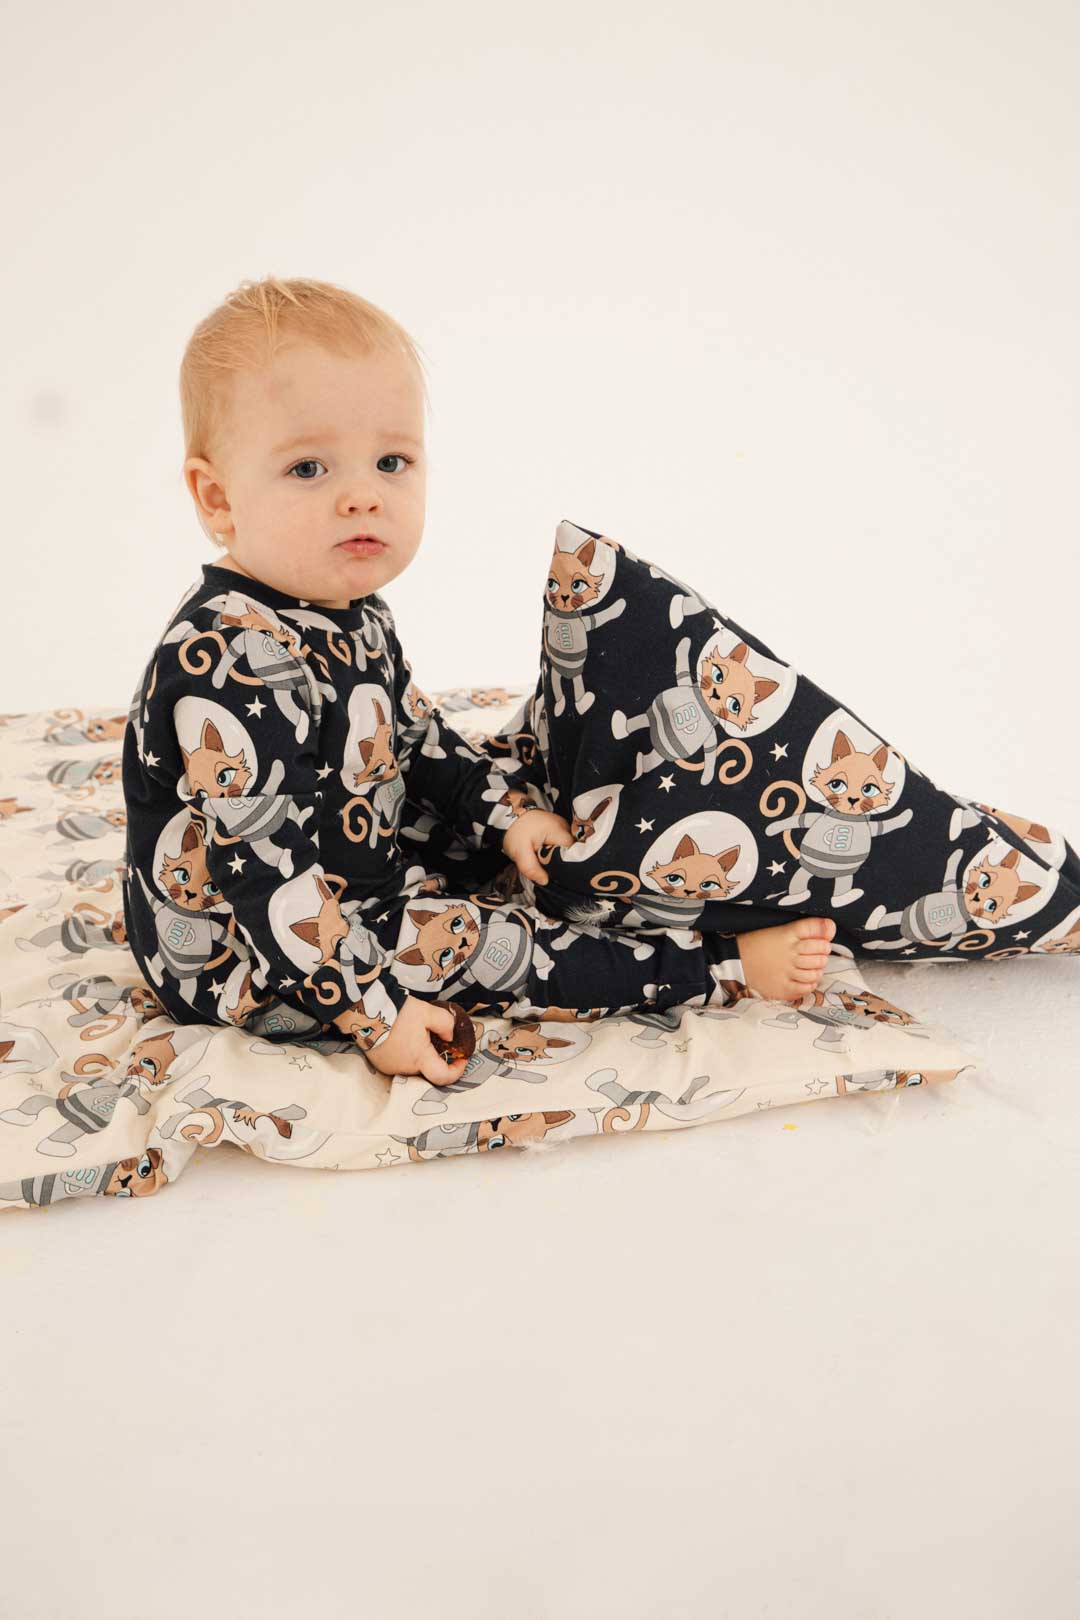 Dear Sophie - Astrocat Dark Baby Sleepwear